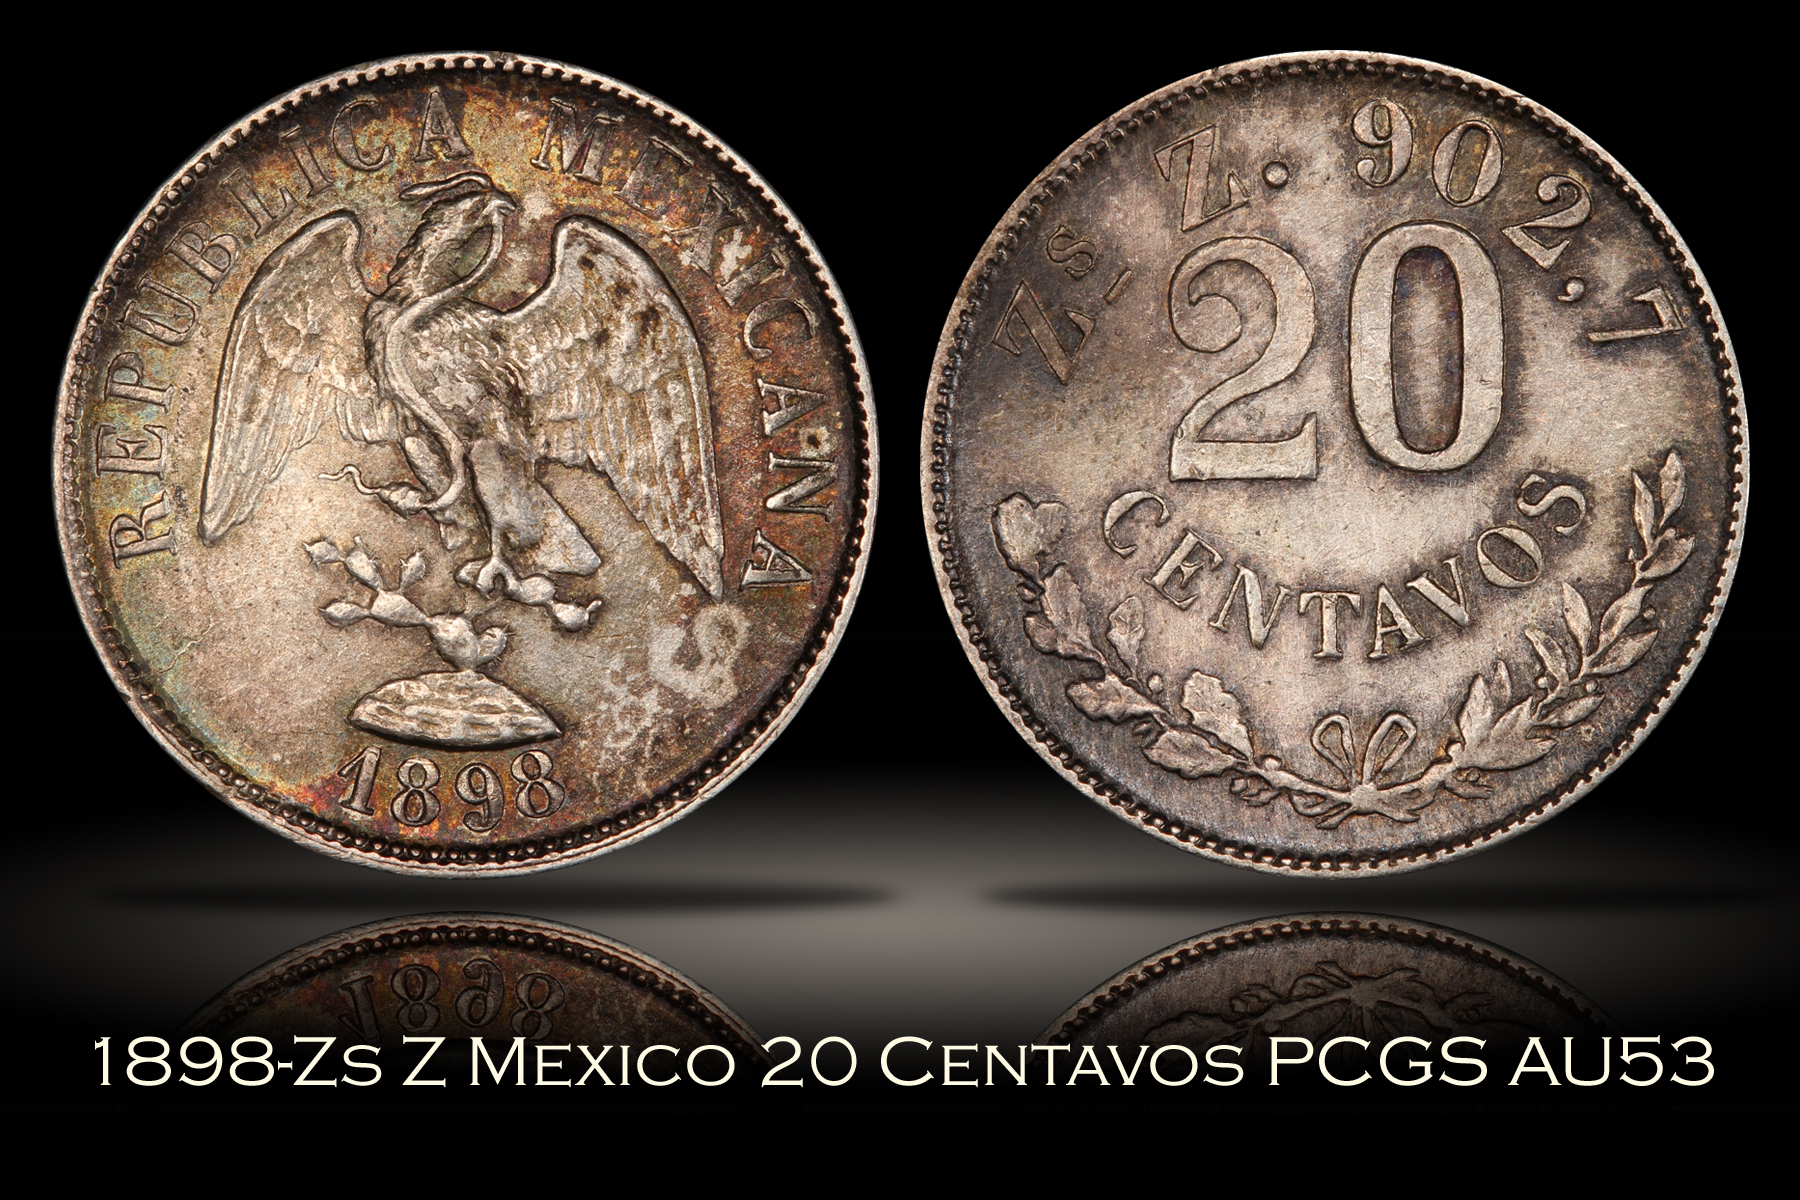 1898-Zs Z Mexico 20 Centavos PCGS AU53